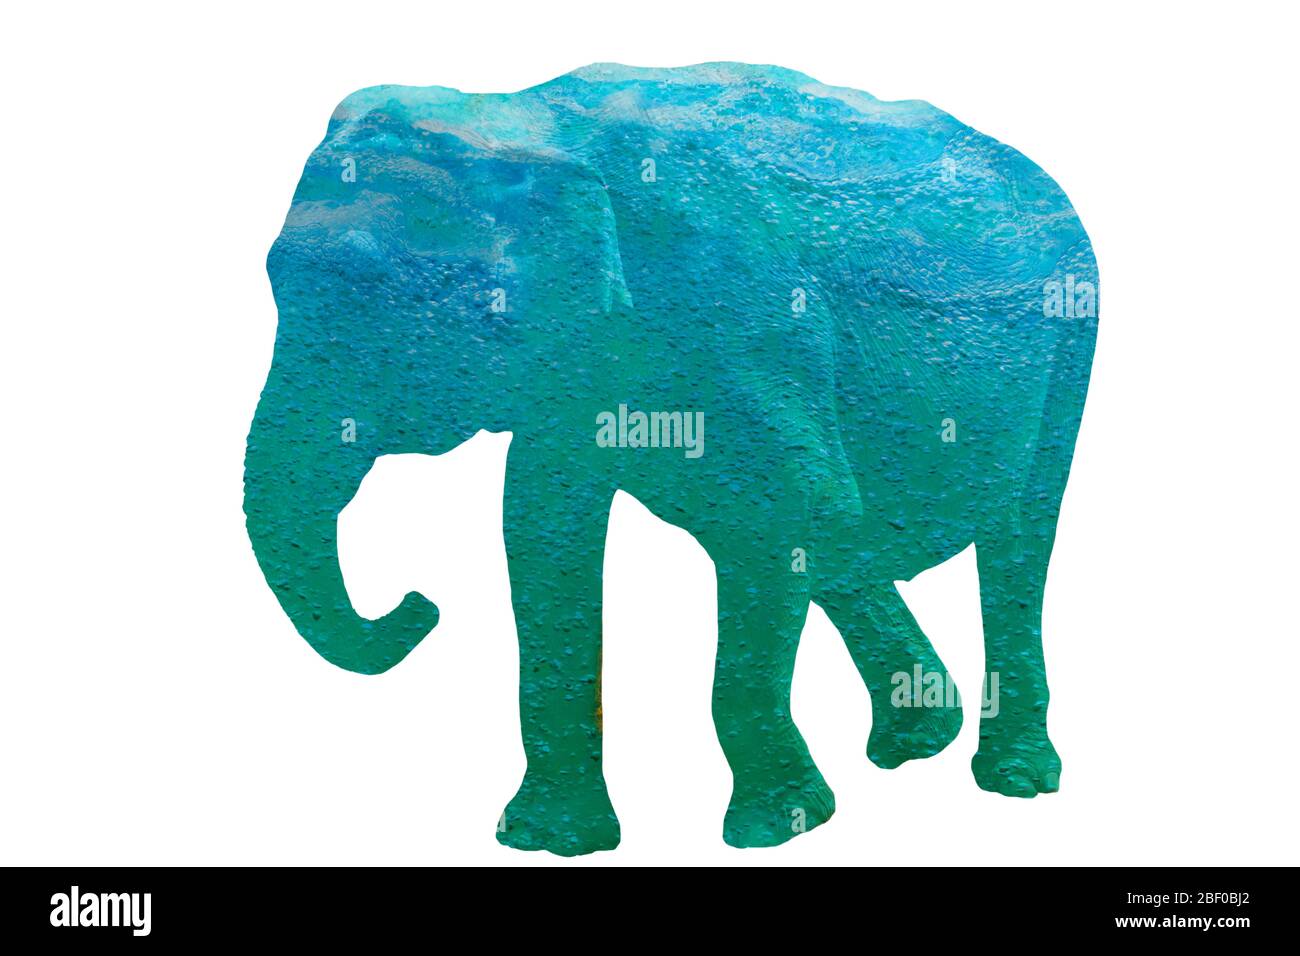 Elefant Illustration mit türkis blauer Wasser Struktur Stock Photo